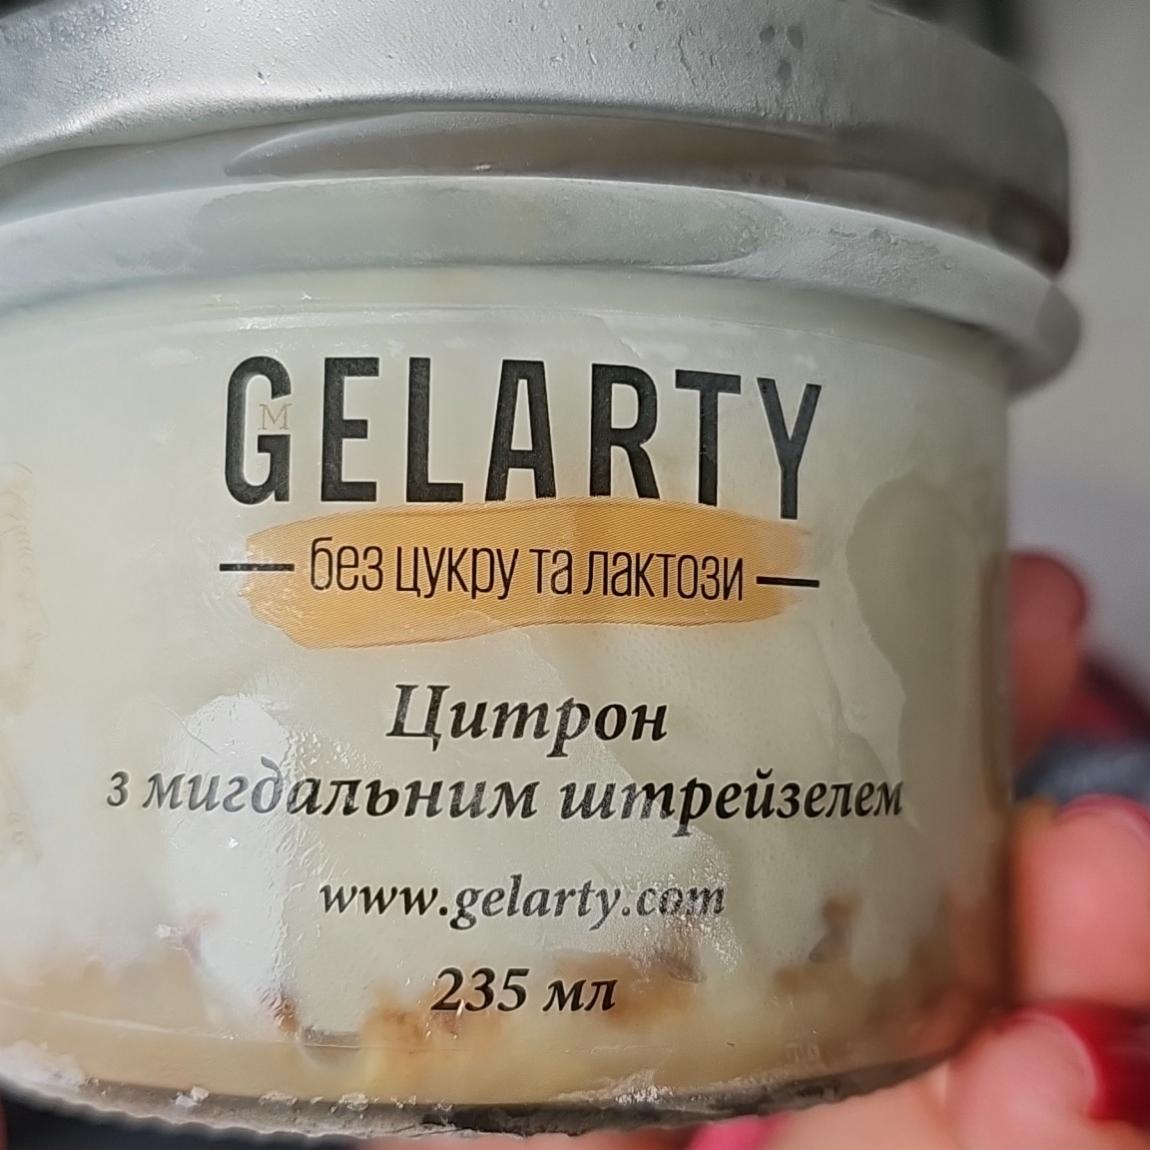 Фото - Морозиво вершкове Цитрон з мигдальним штрейзелем без цукру та лактози Gelarty